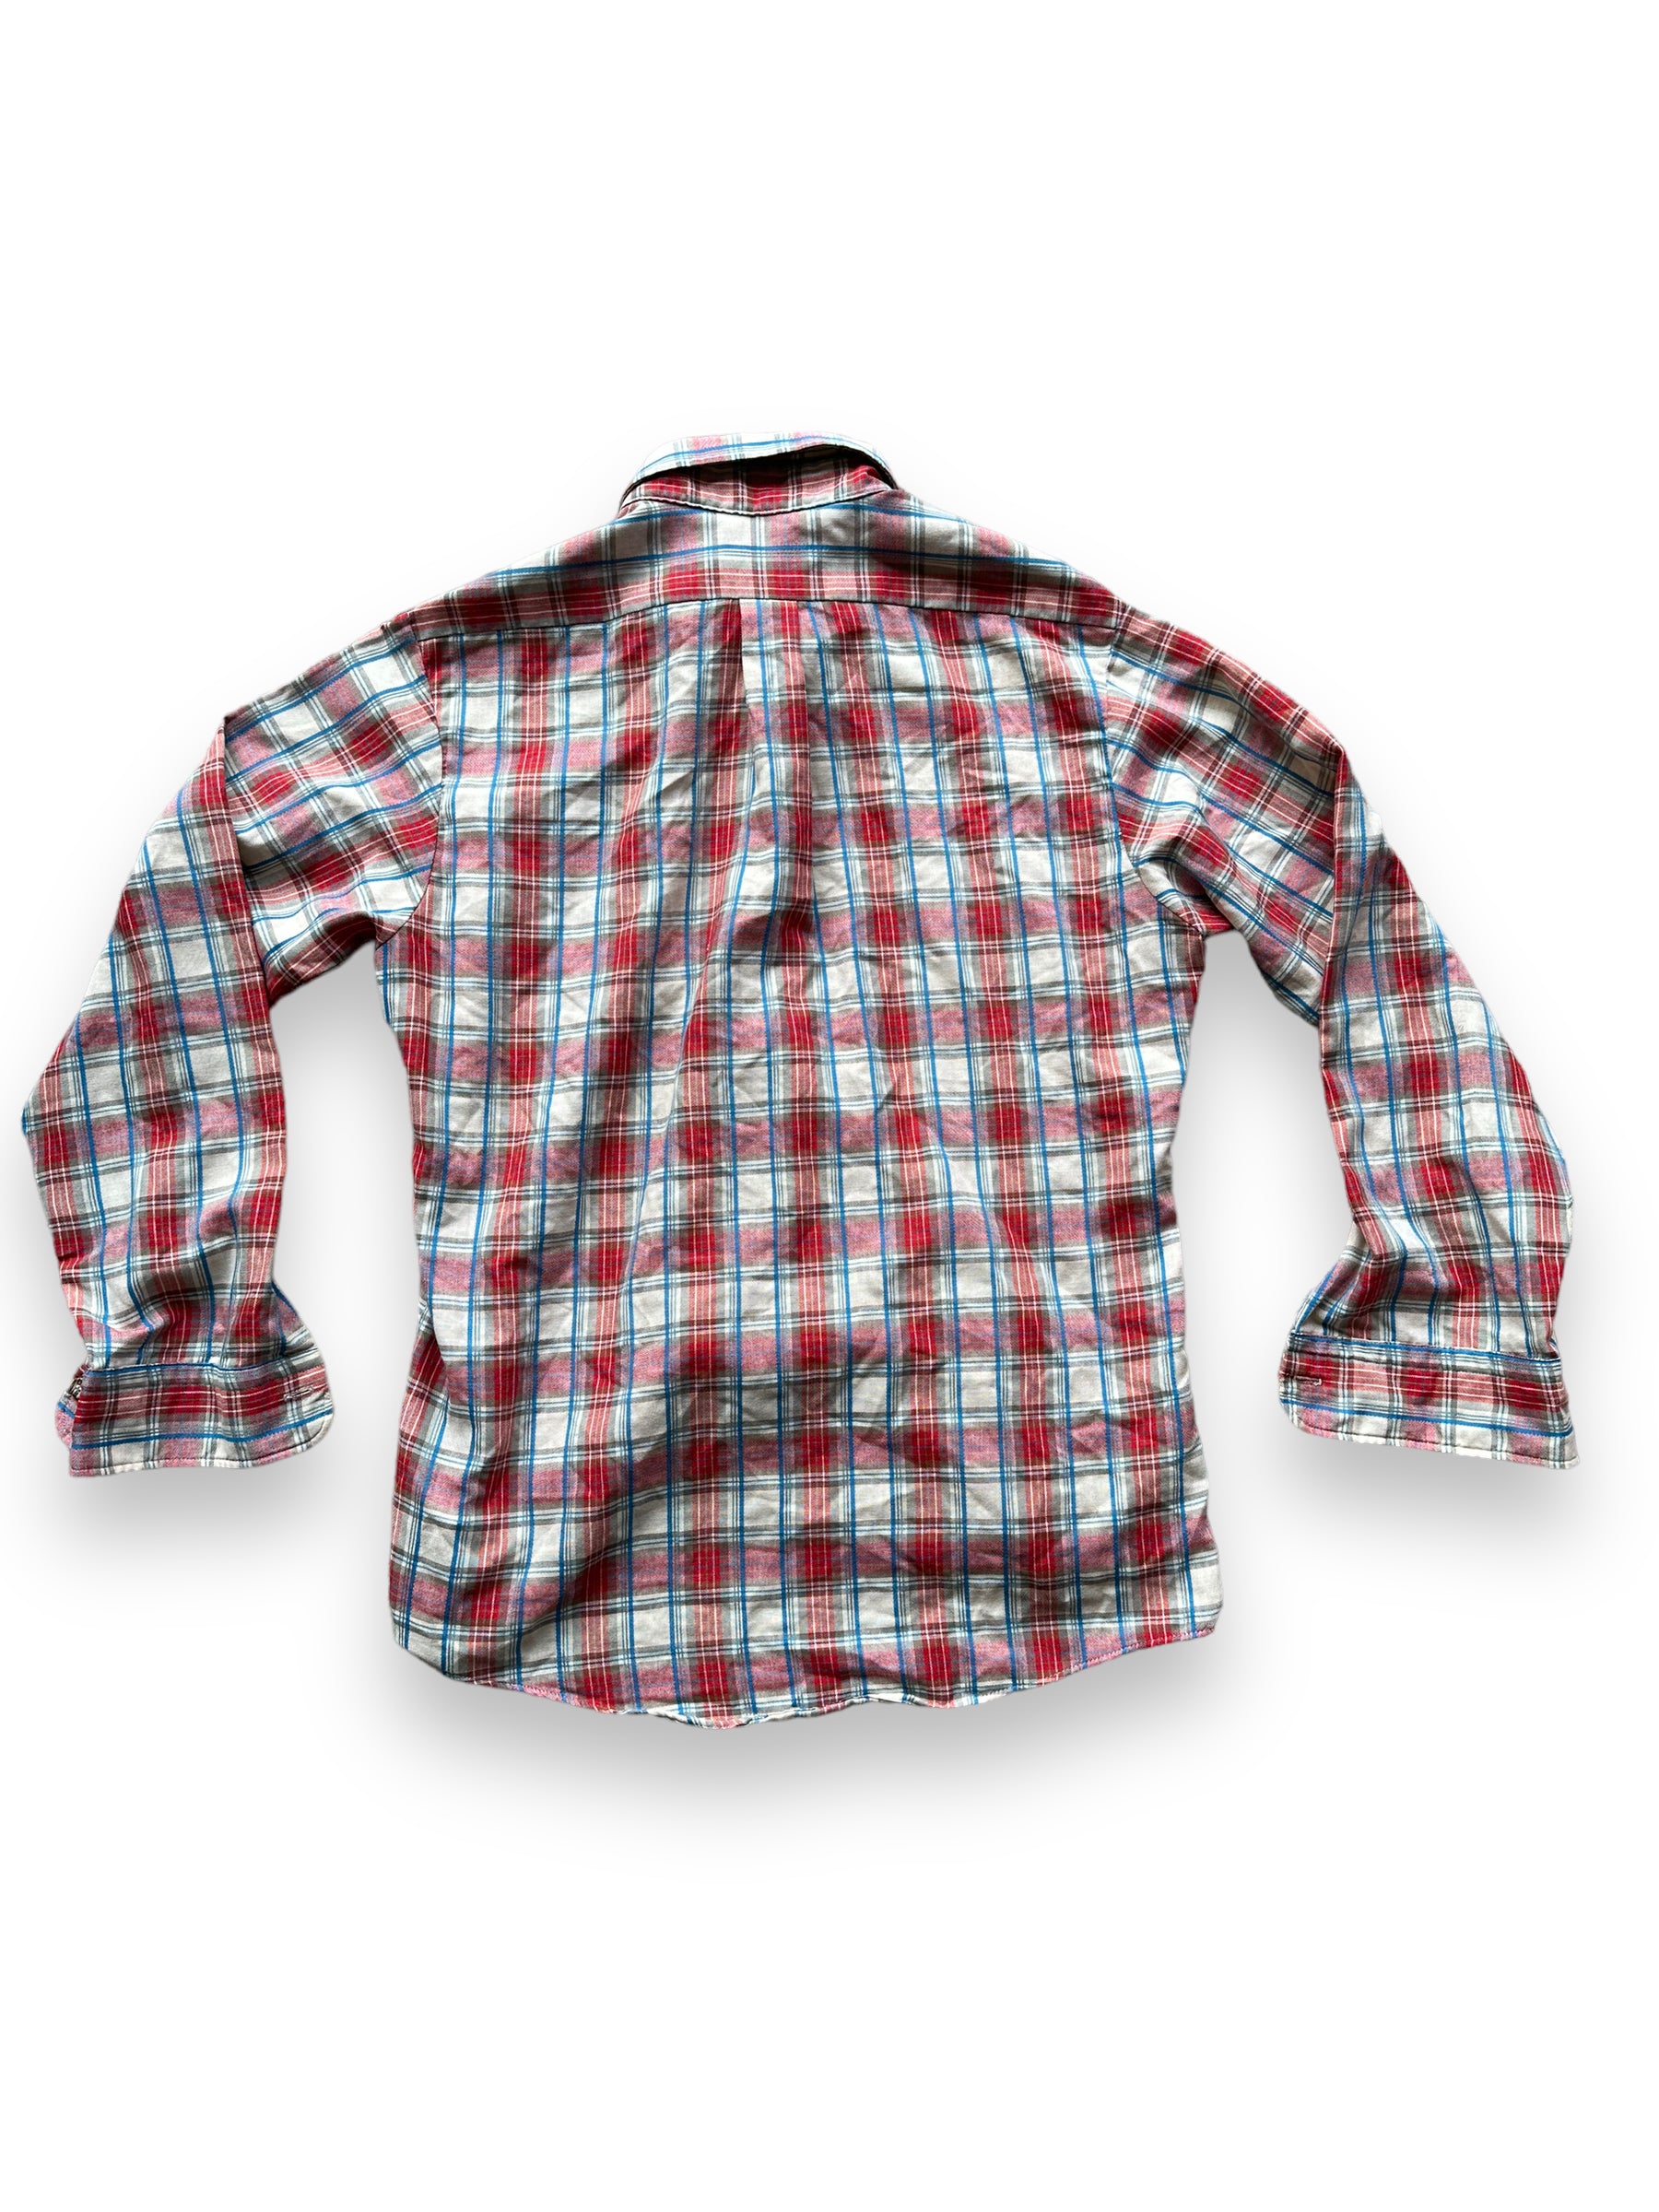 Back of Vintage Plaid Par Four Sportswear Button Up Shirt SZ M | Vintage Cotton Flannel Seattle | Barn Owl Vintage Seattle